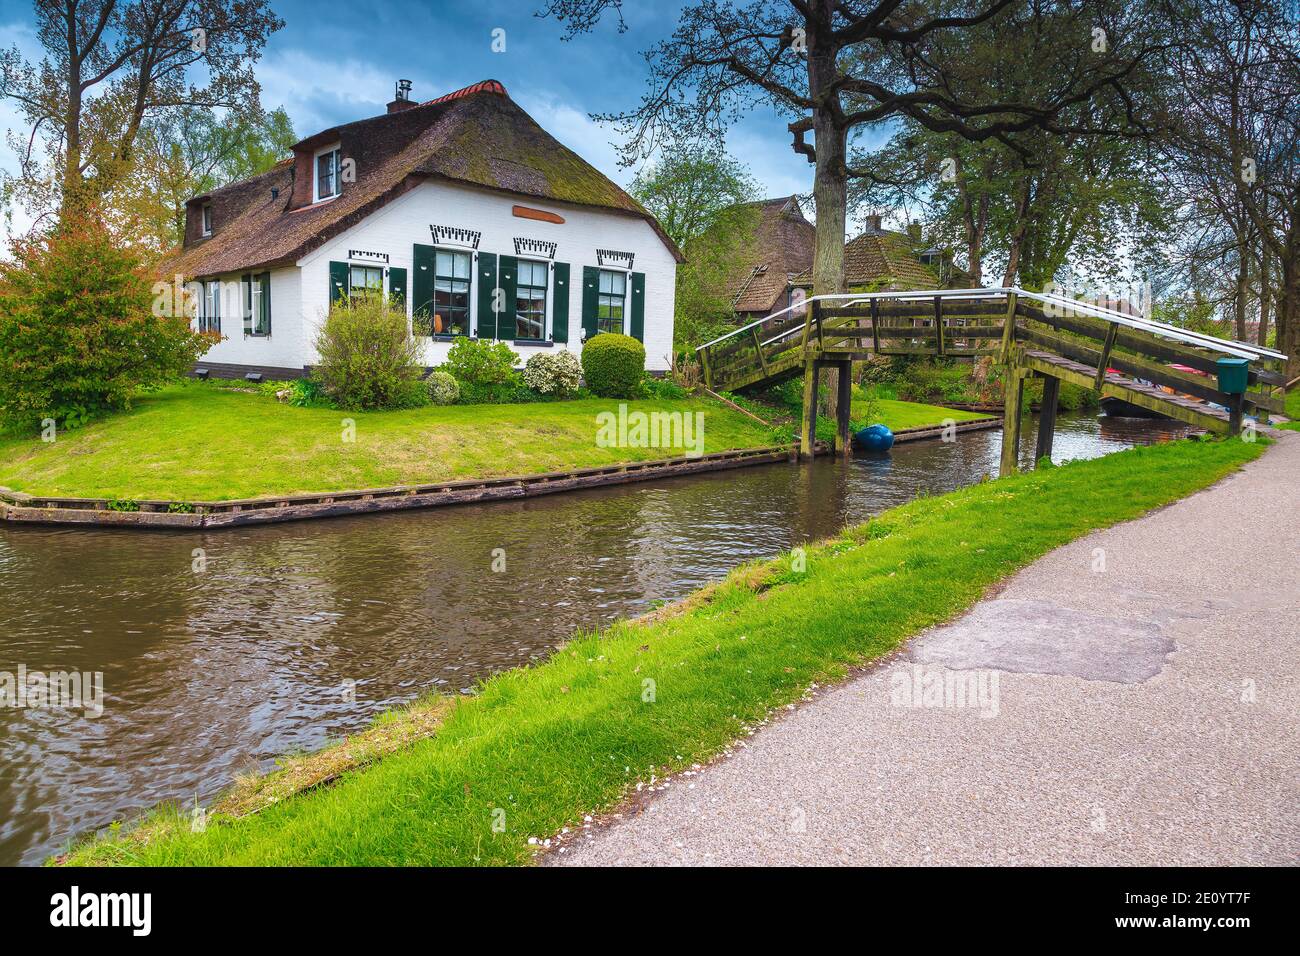 Maison rurale au bord de l'eau et vieux pont en bois sur le canal d'eau, Giethoorn, pays-Bas, Europe Banque D'Images